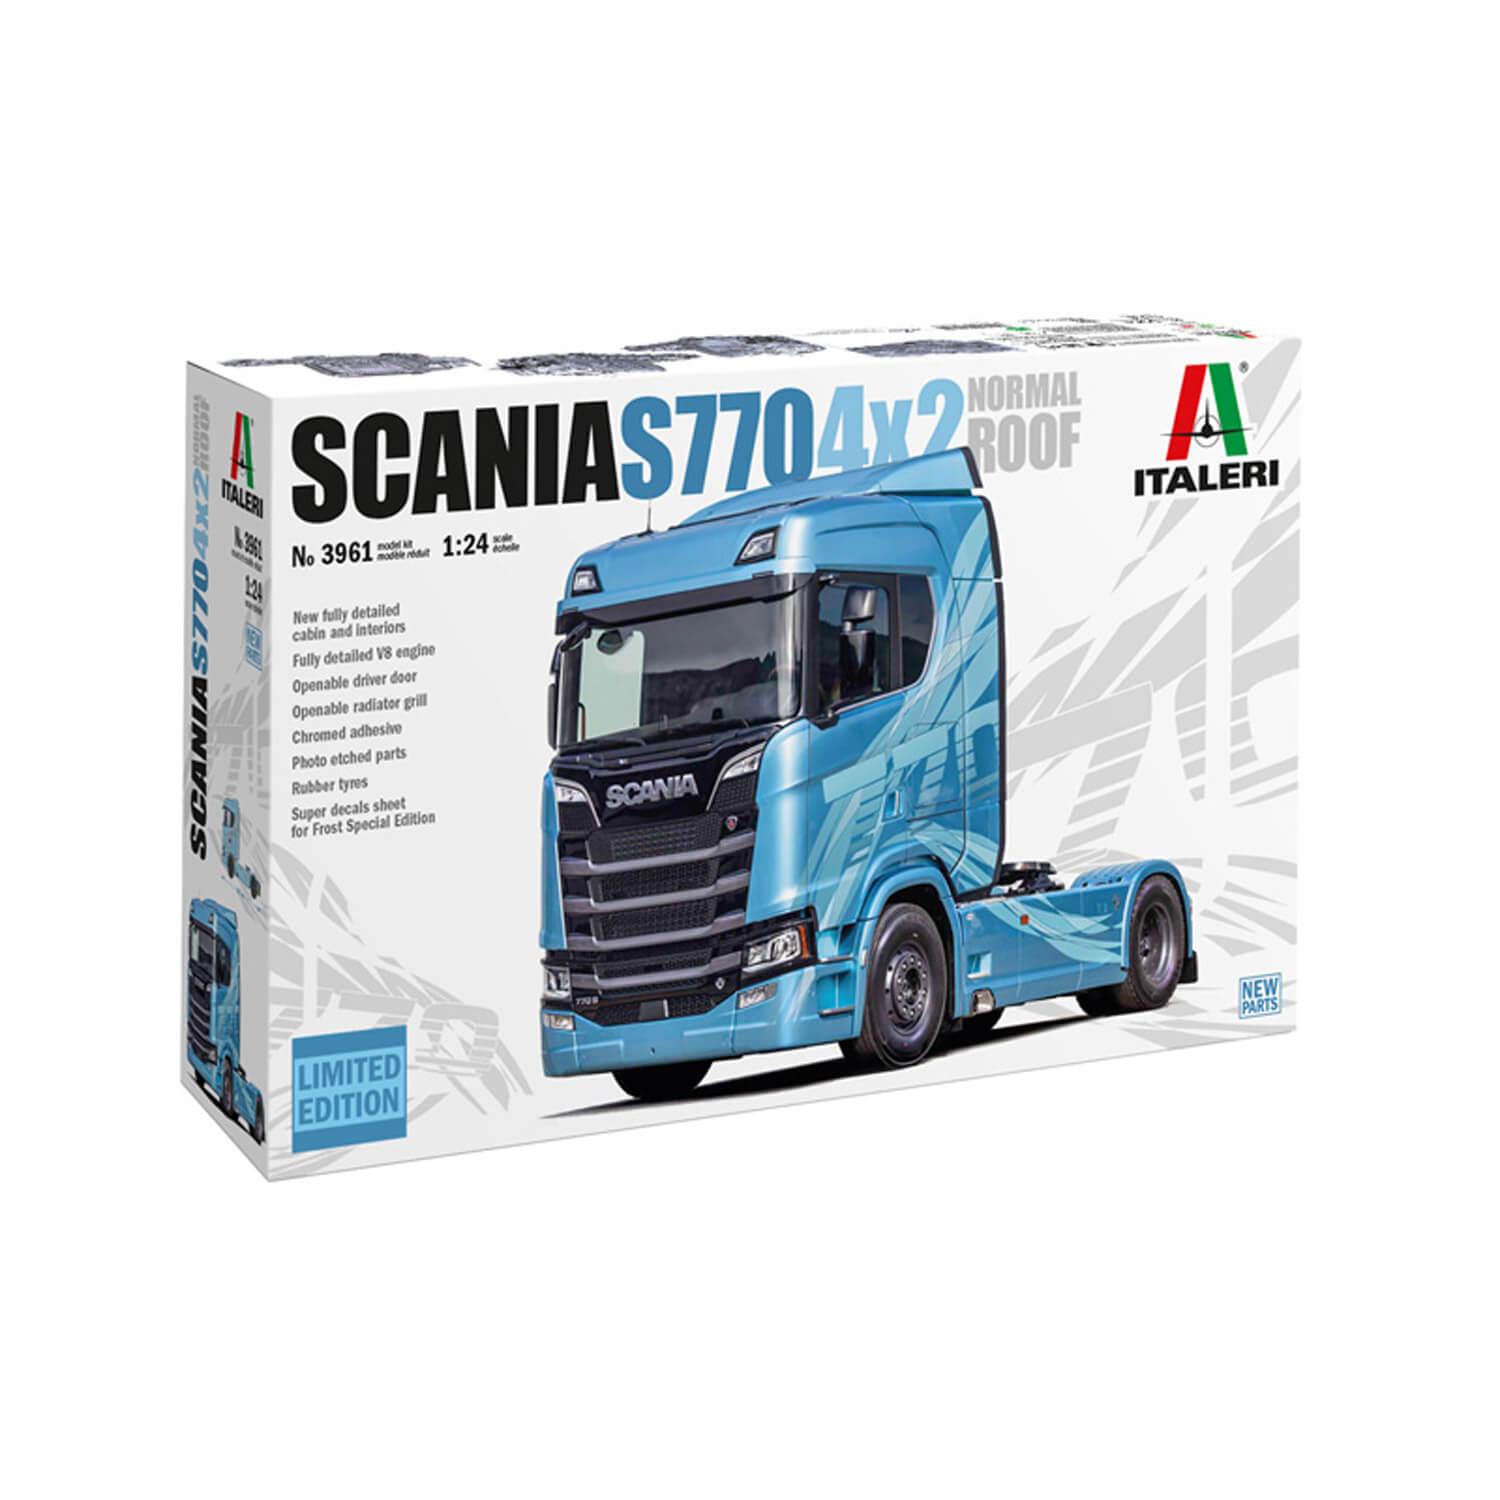 Maquette Camion : Scania 770 4x2 Cabine Basse - Jeux et jouets Italeri -  Avenue des Jeux